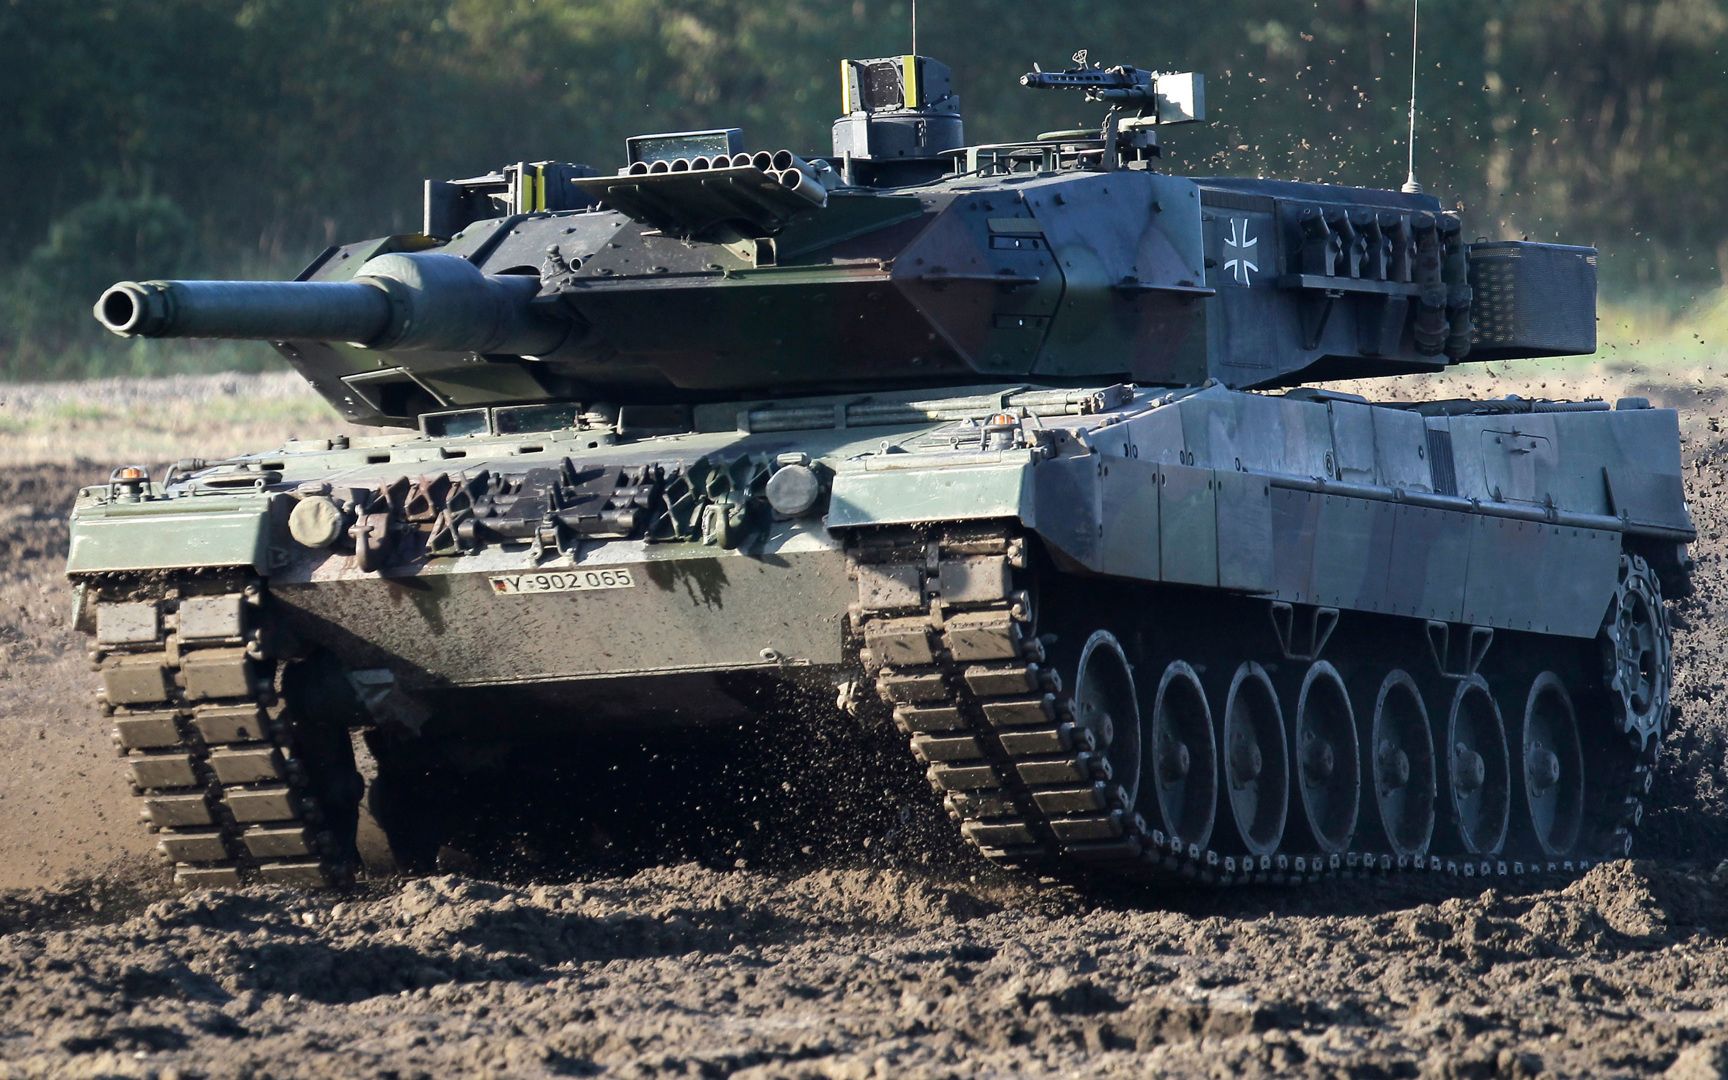 Leopard для України - Магда пояснив вигоду для Польщі - 24 Канал